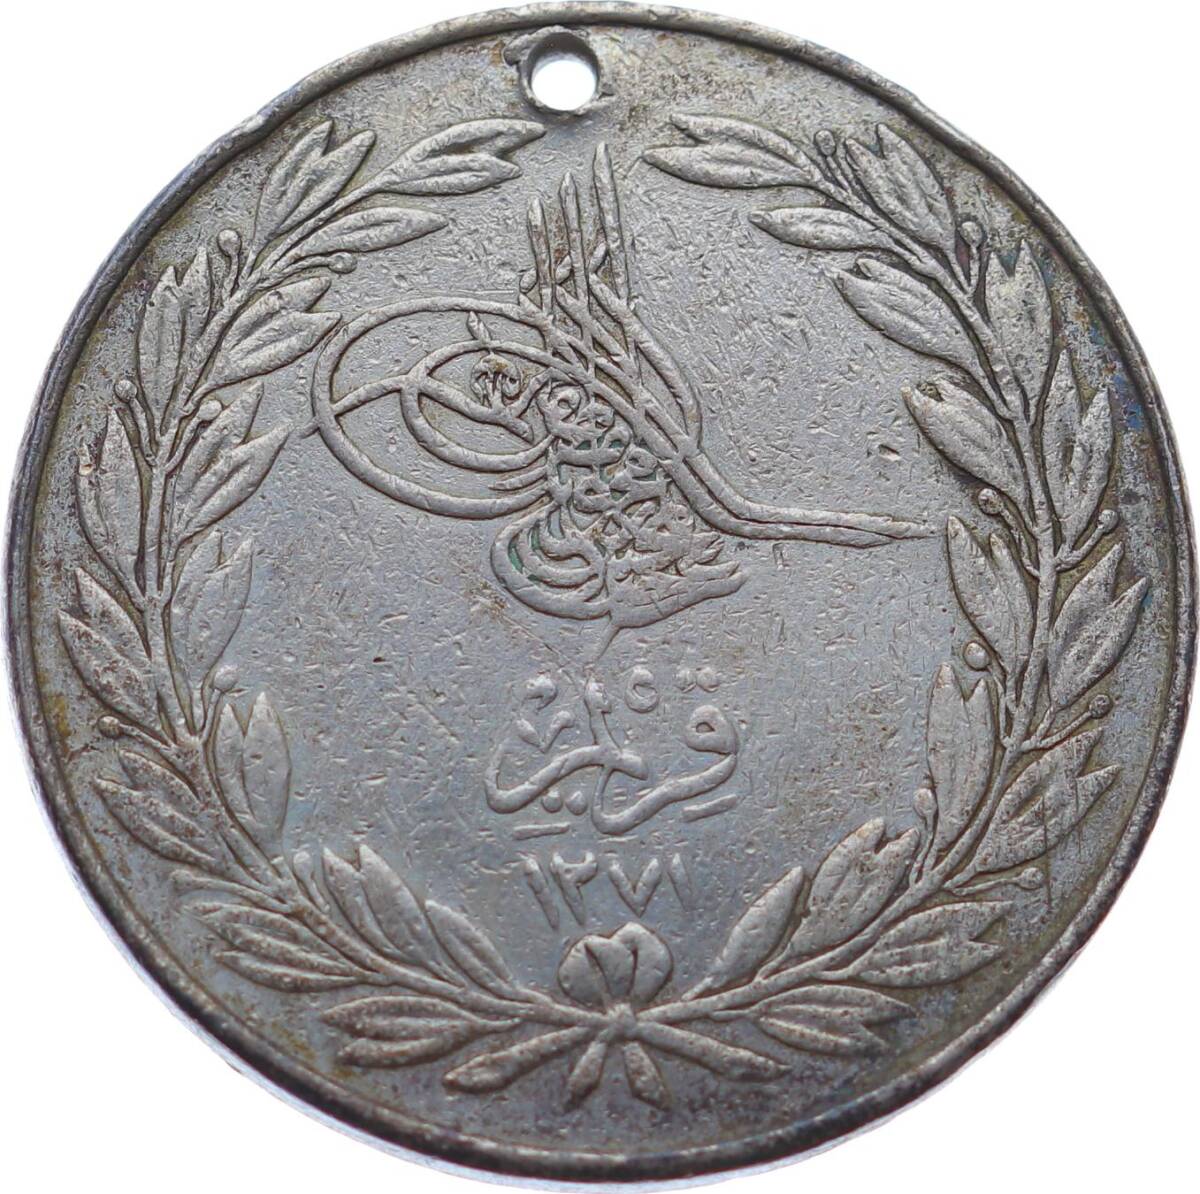 Abdülmecid 1271 (1854) Kırım Madalyası Gümüş (Crimea) MVM1189 - 1